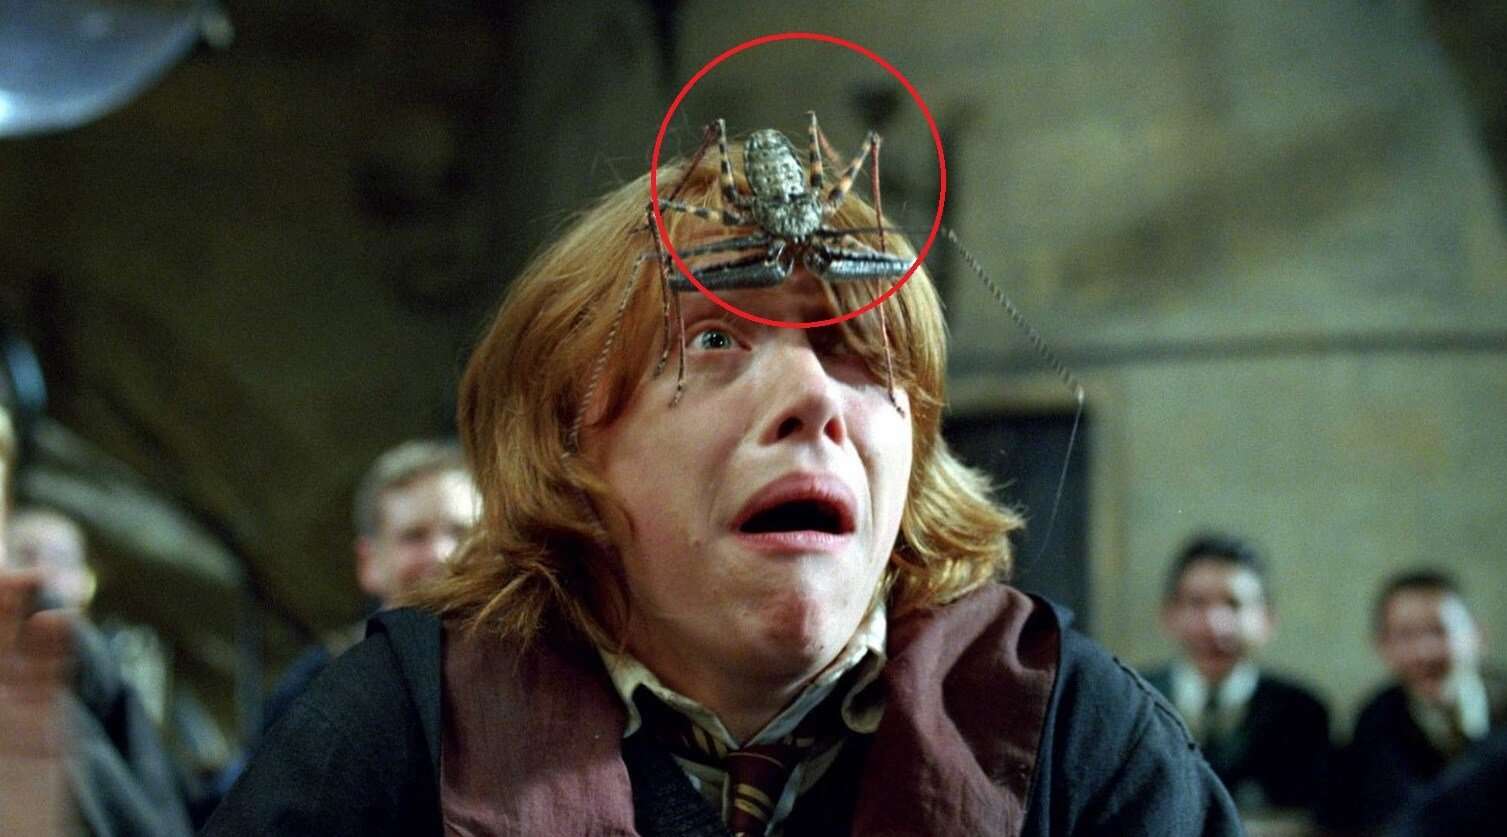 Фрины — ужасные существа из «Гарри Поттера», которые существуют в реальности. Кто бы мог подумать, что монстры из «Гарри Поттера» существуют в реальном мире? Фото.